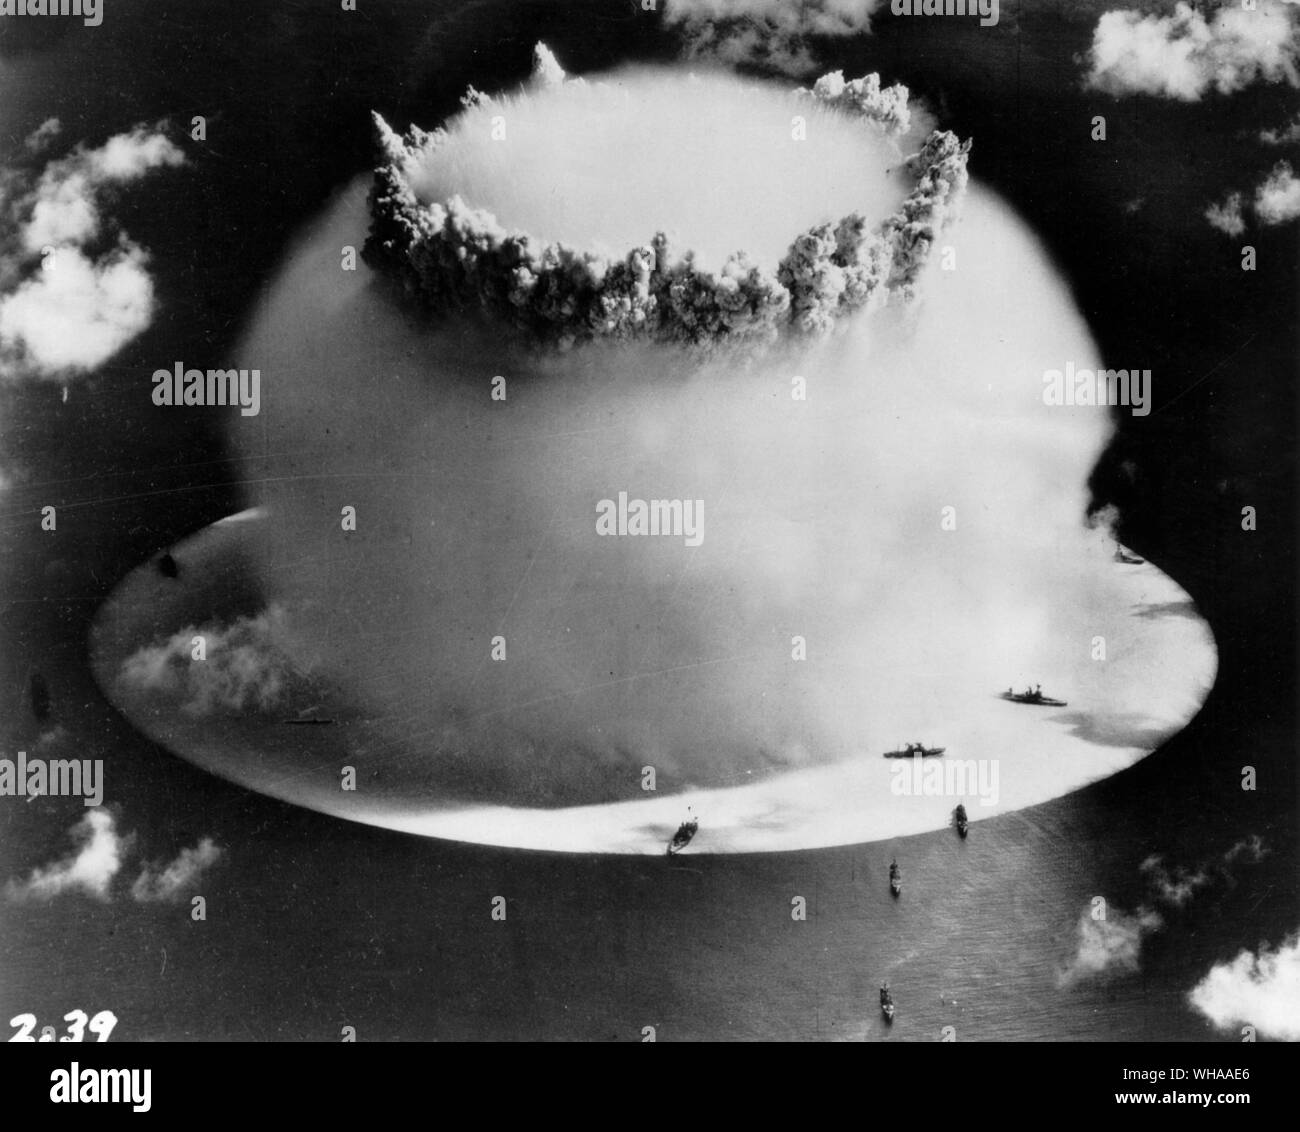 La Cámara de niebla de ' ' efecto observado tras la explosión submarina en Bikini. El resbaladizo, debido a la onda de choque puede ser visto. Foto de stock